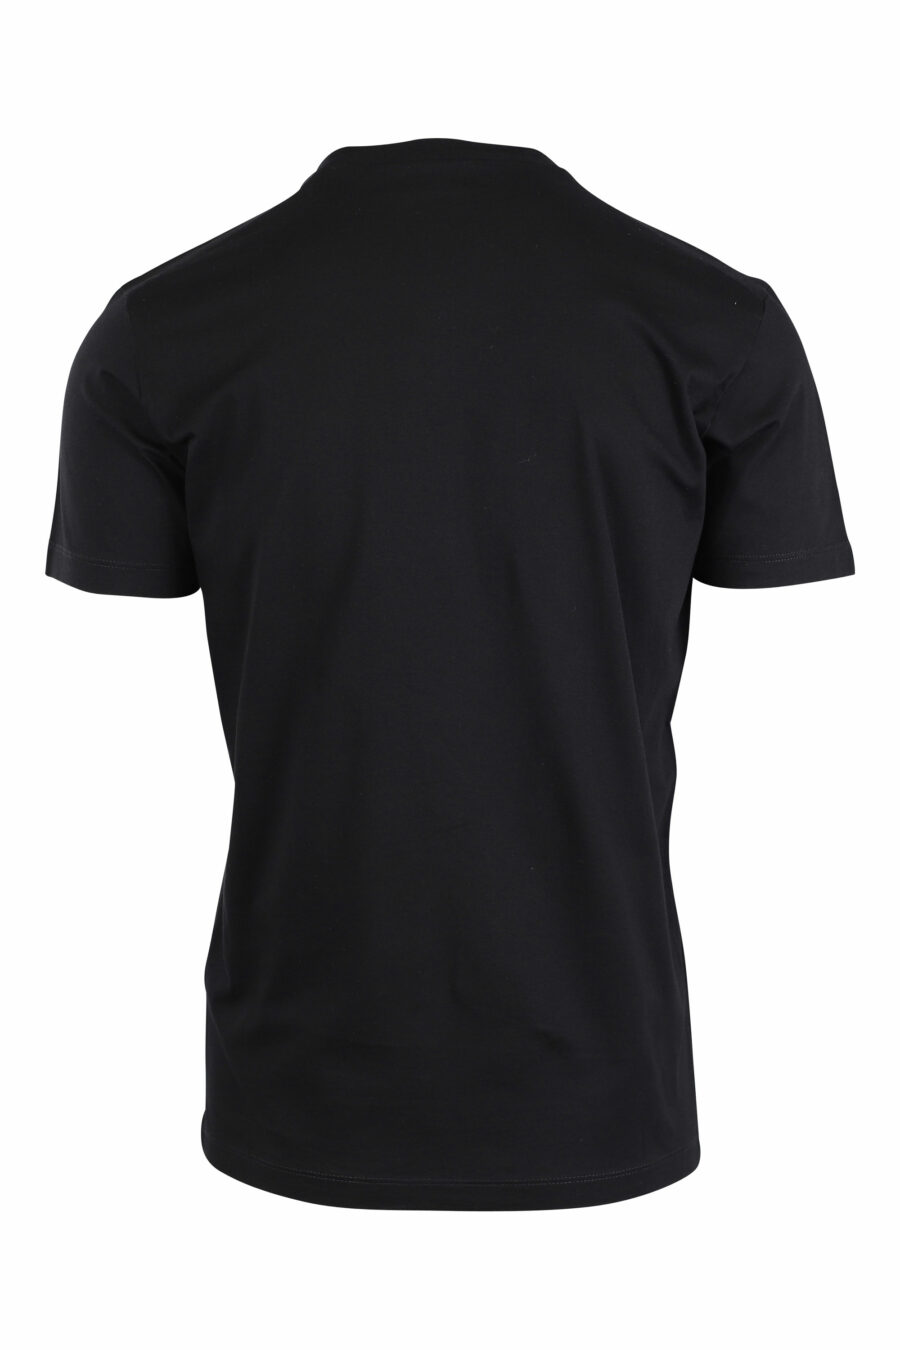 Schwarzes T-Shirt mit Maxillover und weißer Folie - IMG 2648